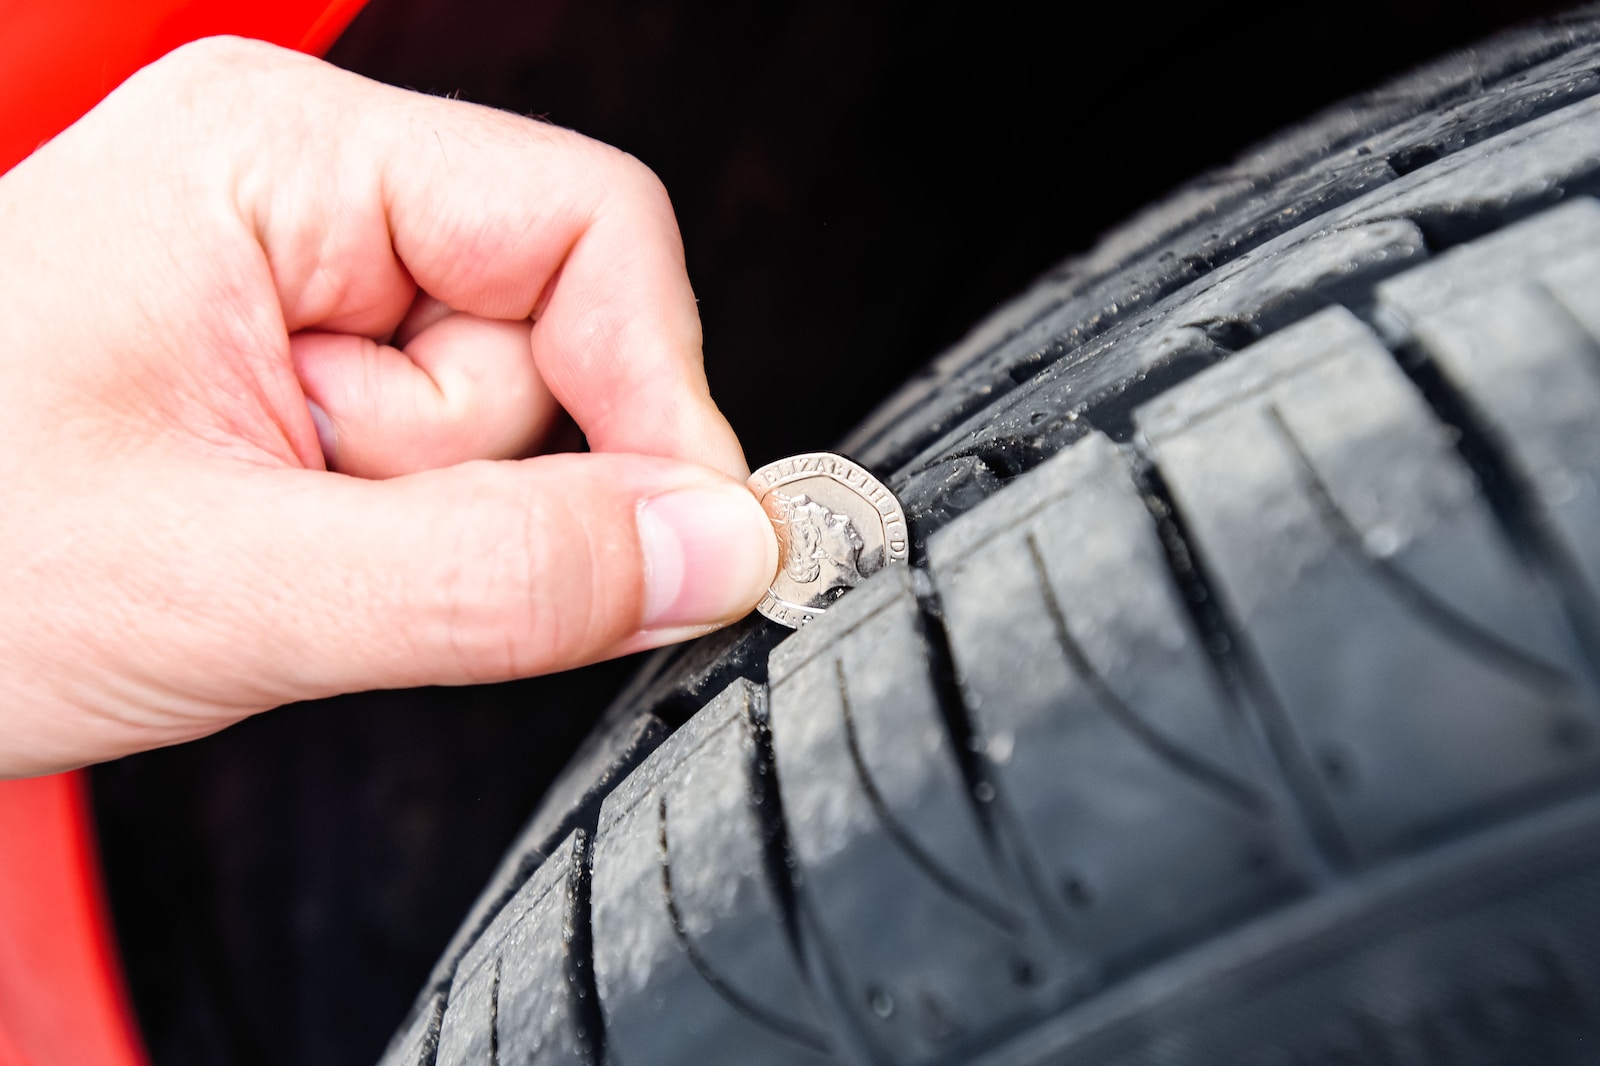 Comment choisir le bon profil de pneu pour votre voiture?